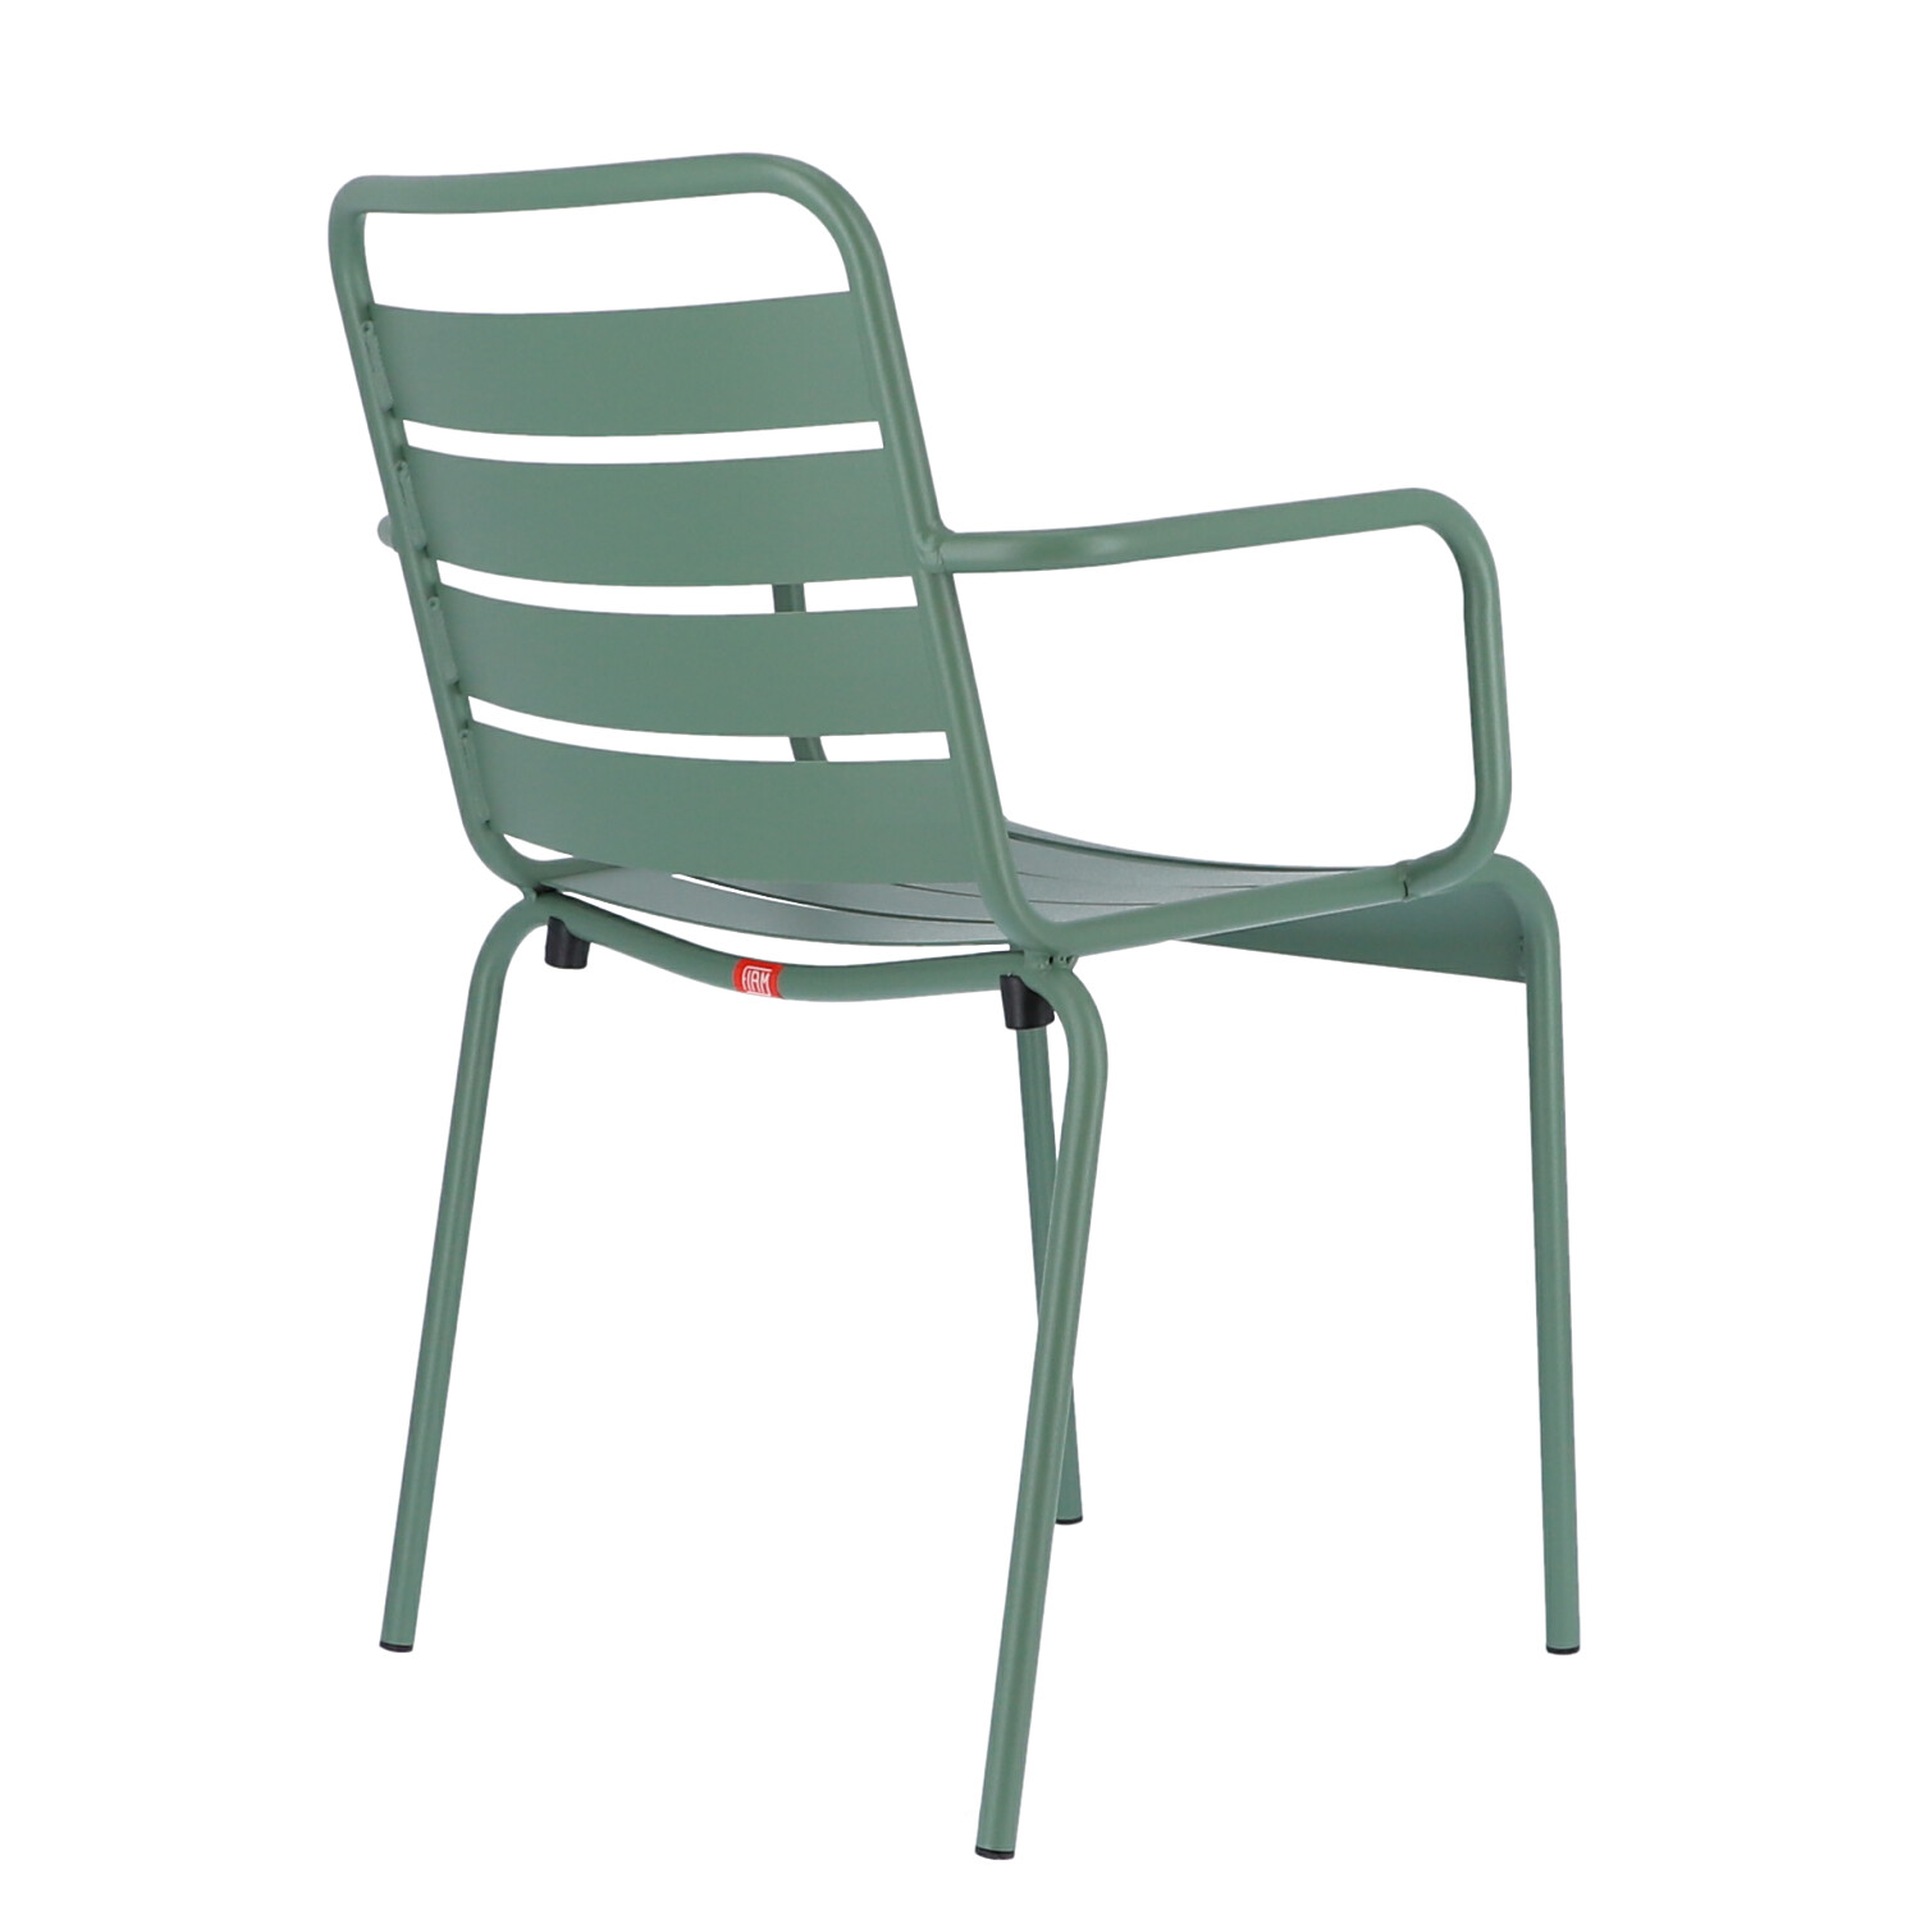 Der moderne Stapelsessel Mya wurde aus Aluminium gefertigt und hat einen salbei Farbton. Designet wurde der Sessel von der Marke Jan Kurtz.